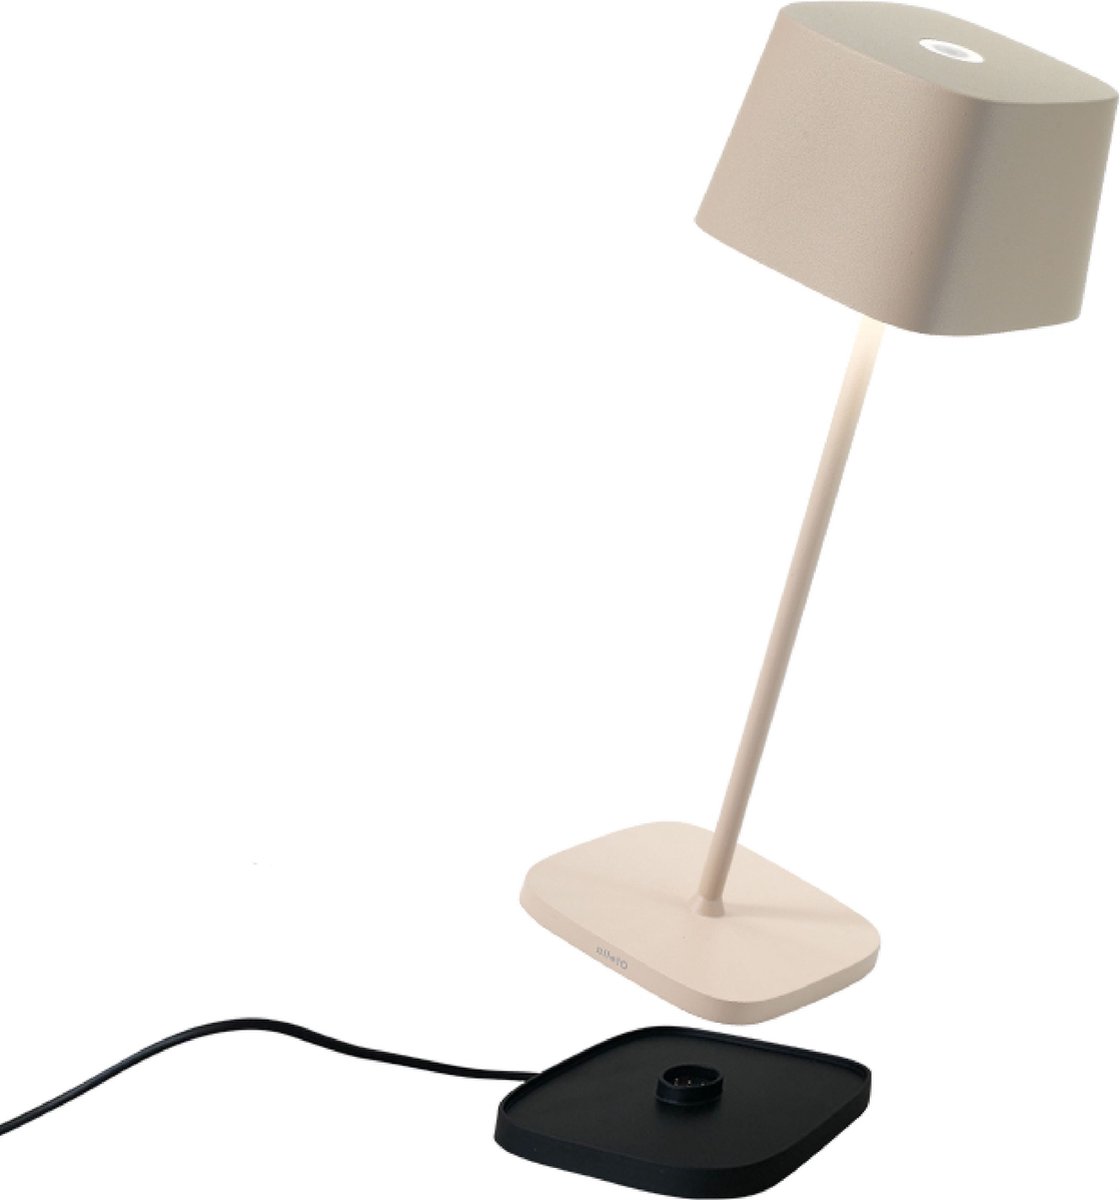 Zafferano - Ofelia MINI - Zand kleur - H30cm - Ledlamp - Bureaulamp – Tafellamp – Snoerloos – Verplaatsbaar – Duurzaam - Voor binnen en buiten – LED - Dimbaar - 3000K - IP65 Spat Waterdicht - USB oplaadbaar